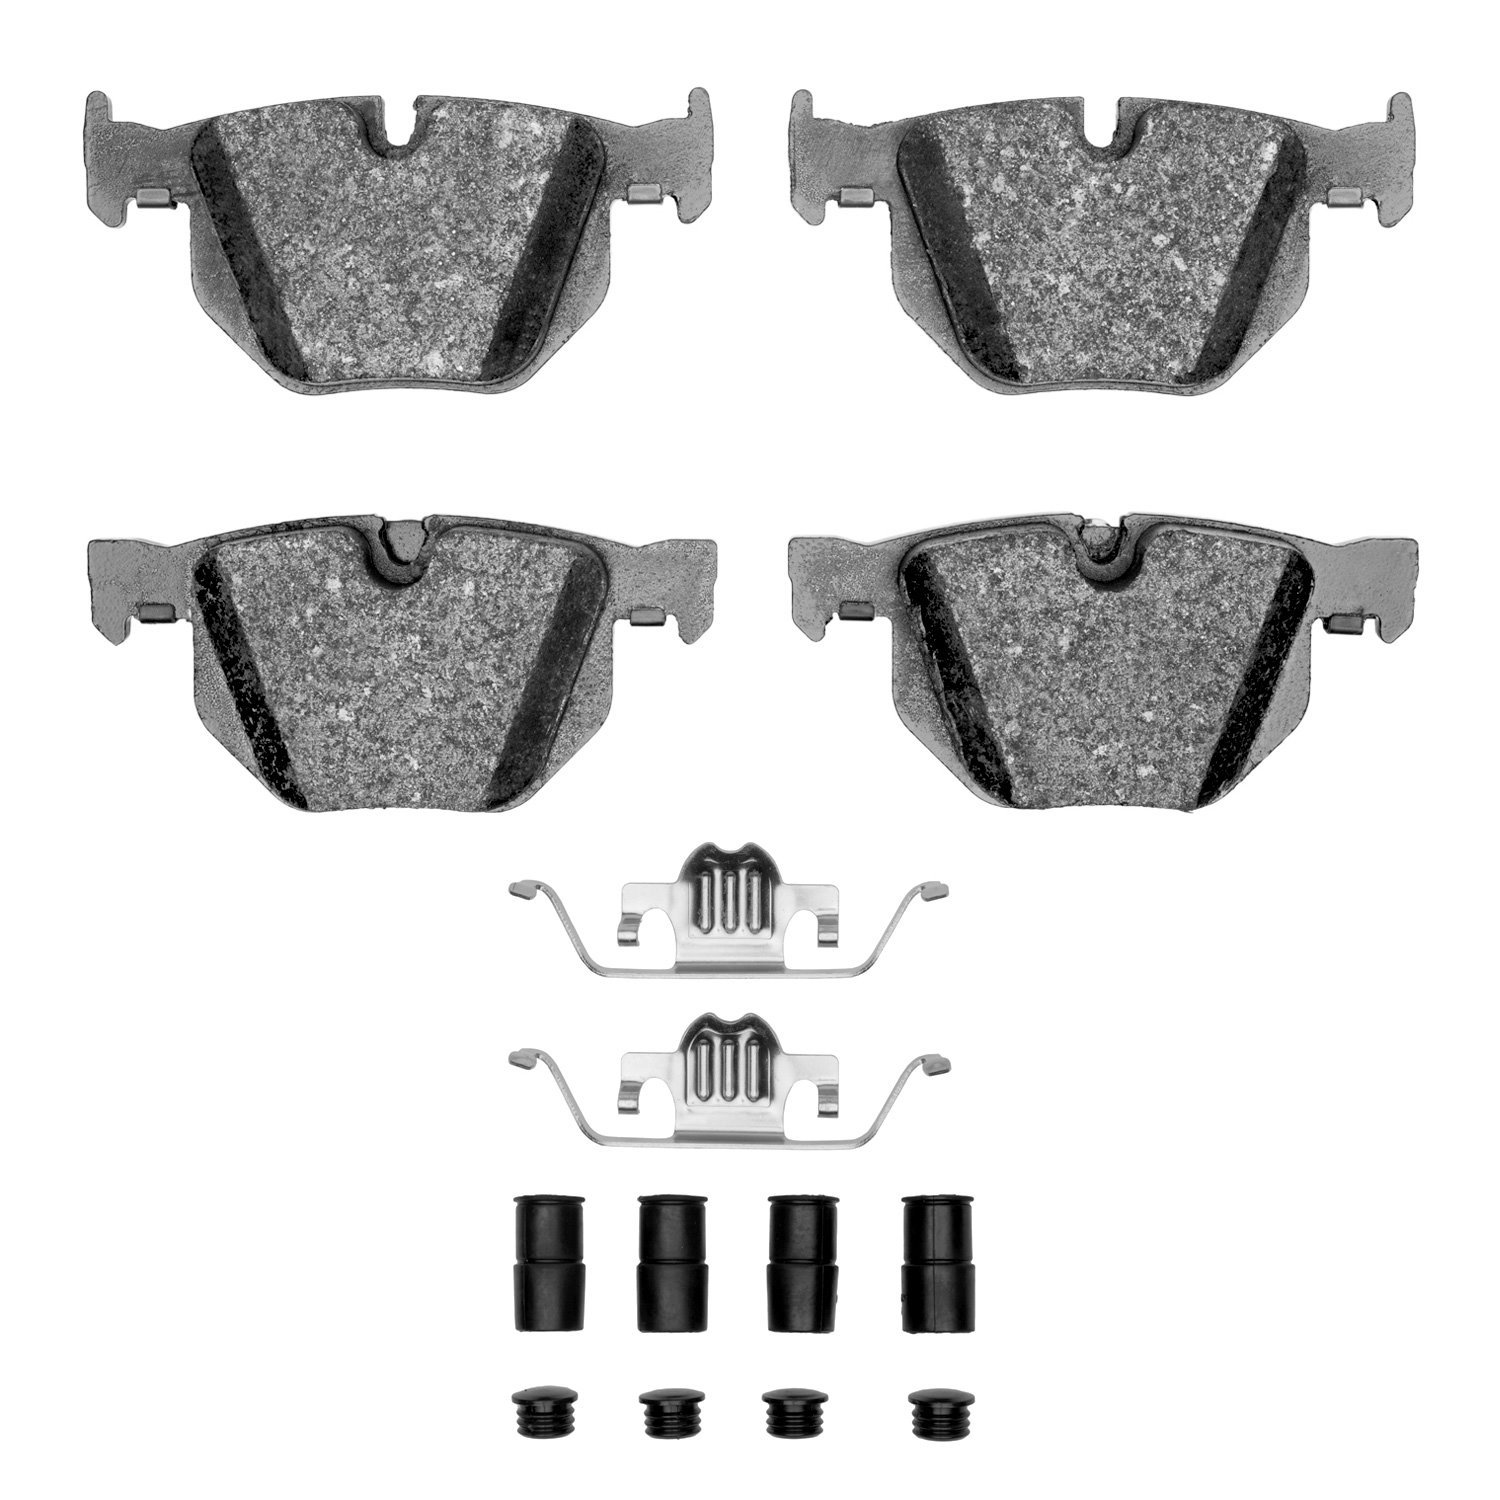 Ceramic Brake Pads & Hardware Kit, 2004-2010 BMW, Position: Rear